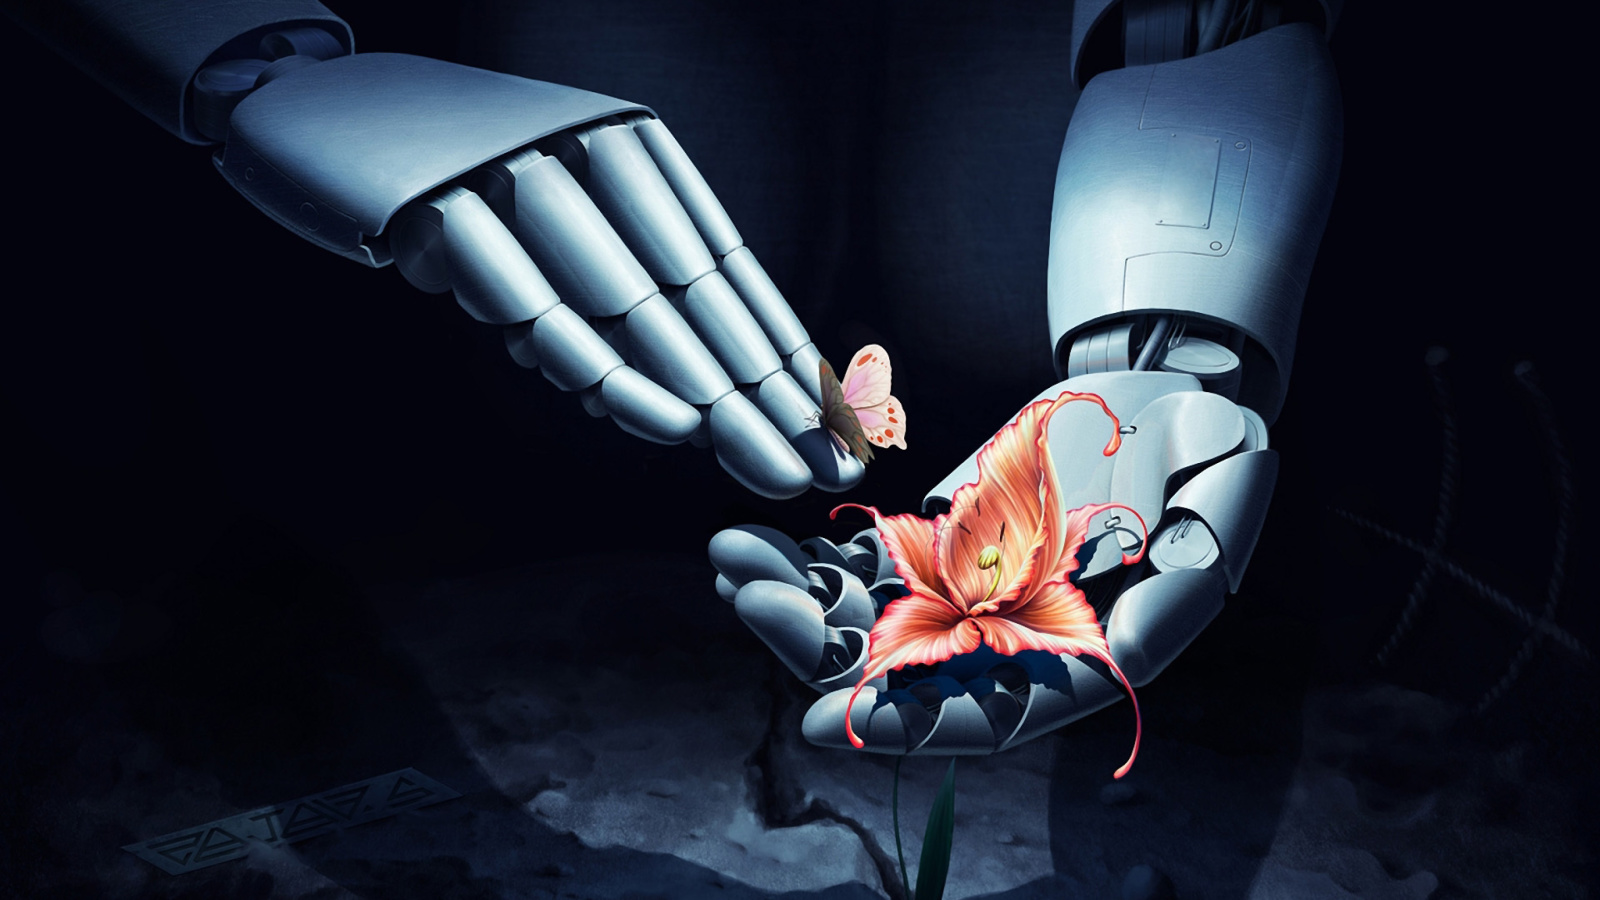 Art Robot Hand with Flower wallpaper 1600x900